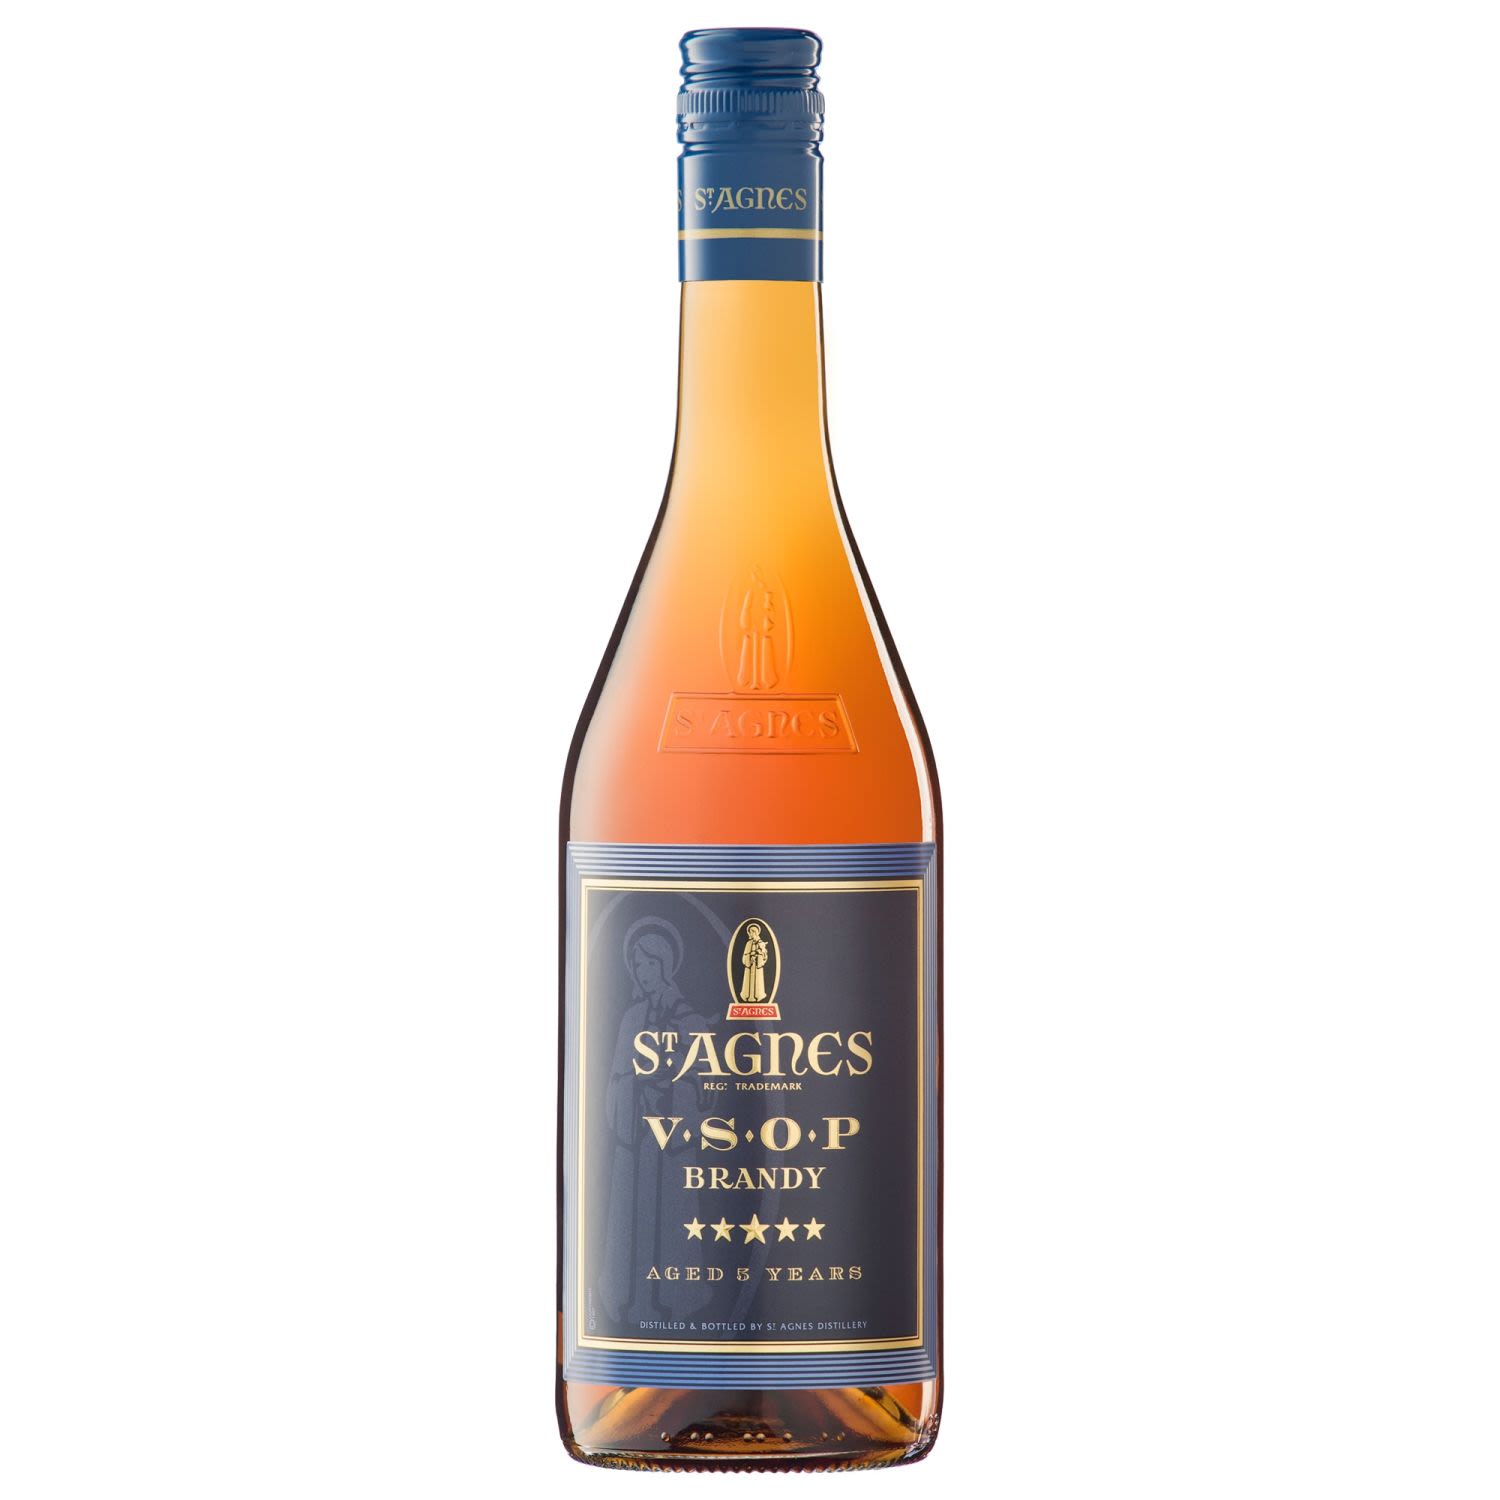 Brandy VSOP 700mL<br /> <br />Alcohol Volume: 37.00%<br /><br />Pack Format: Bottle<br /><br />Standard Drinks: 20</br /><br />Pack Type: Bottle<br /><br />Country of Origin: France<br />